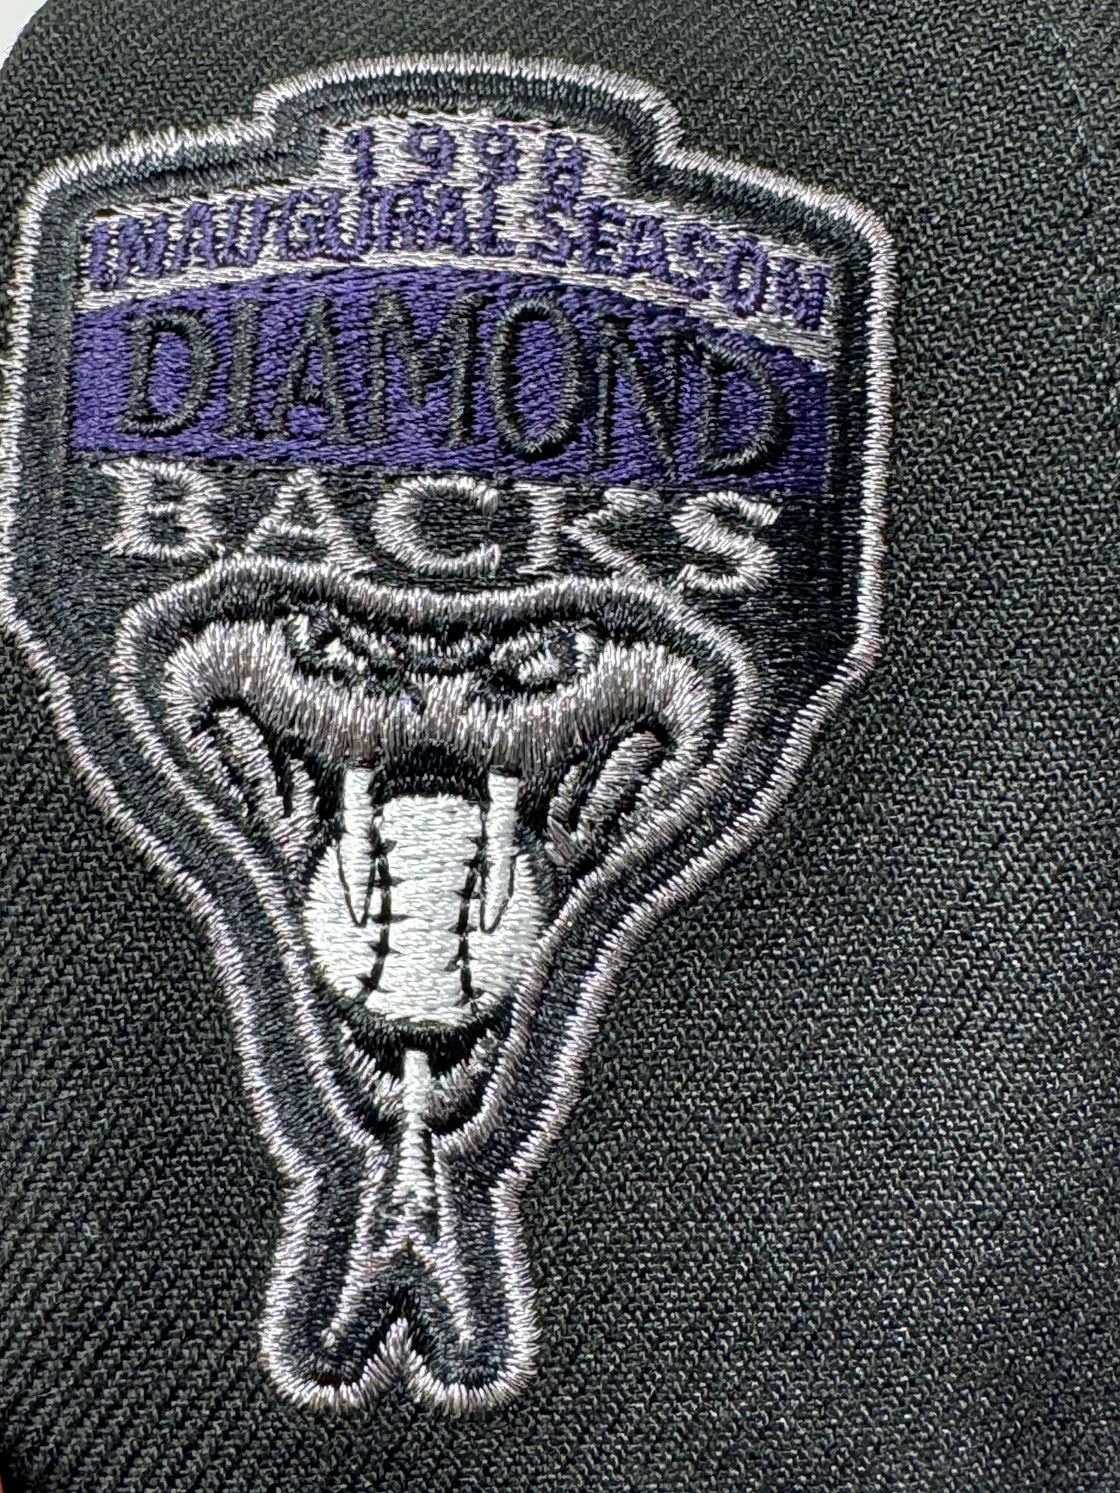 Arizona Diamondbacks 1998 Inaugural Season Eggplant collection 5950 New Era Fitted Hat